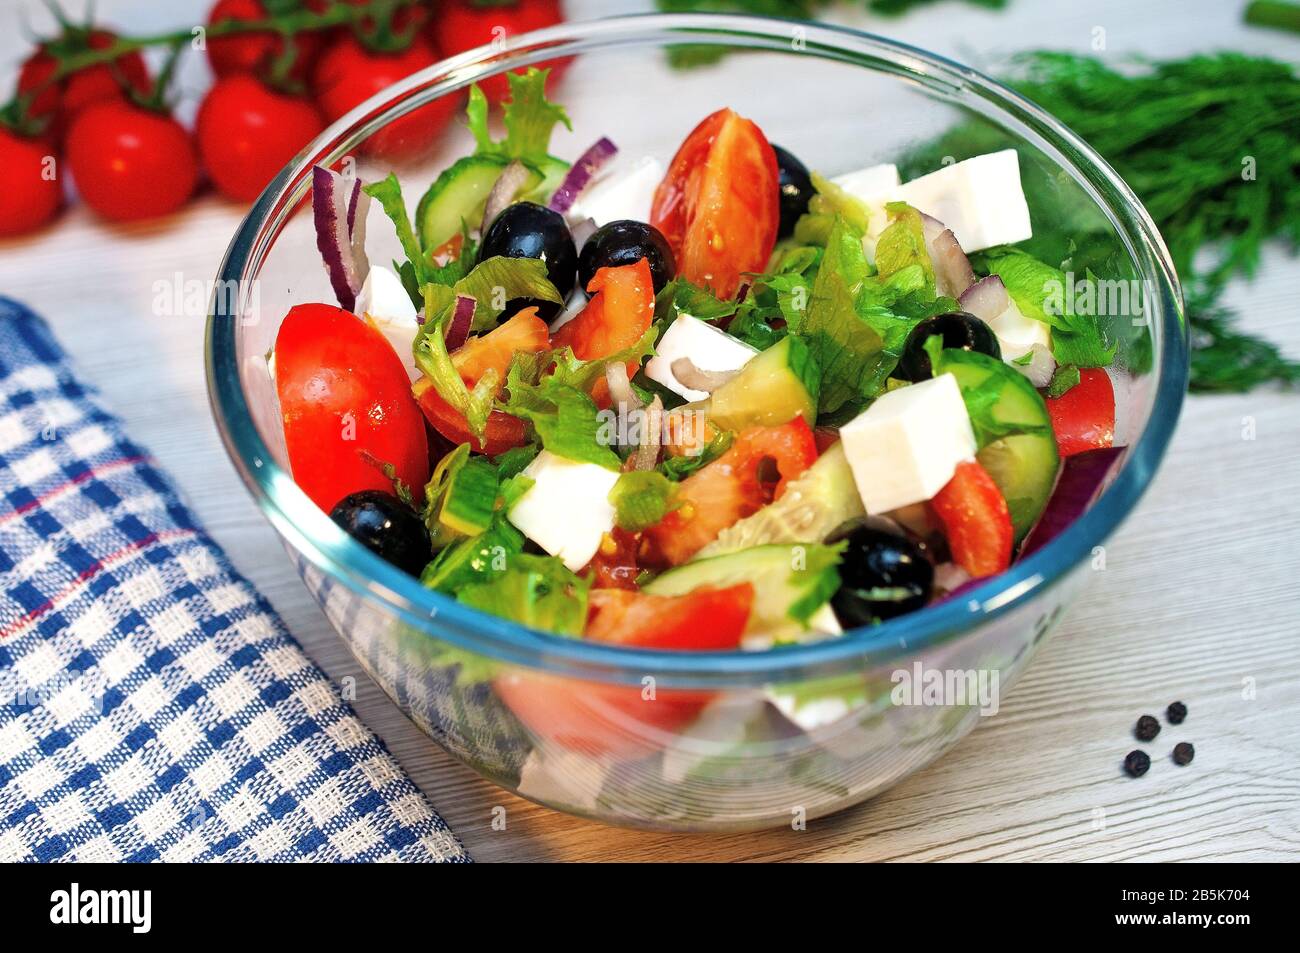 Salade grecque aux tomates, concombres et feta aux olives sur la table Banque D'Images